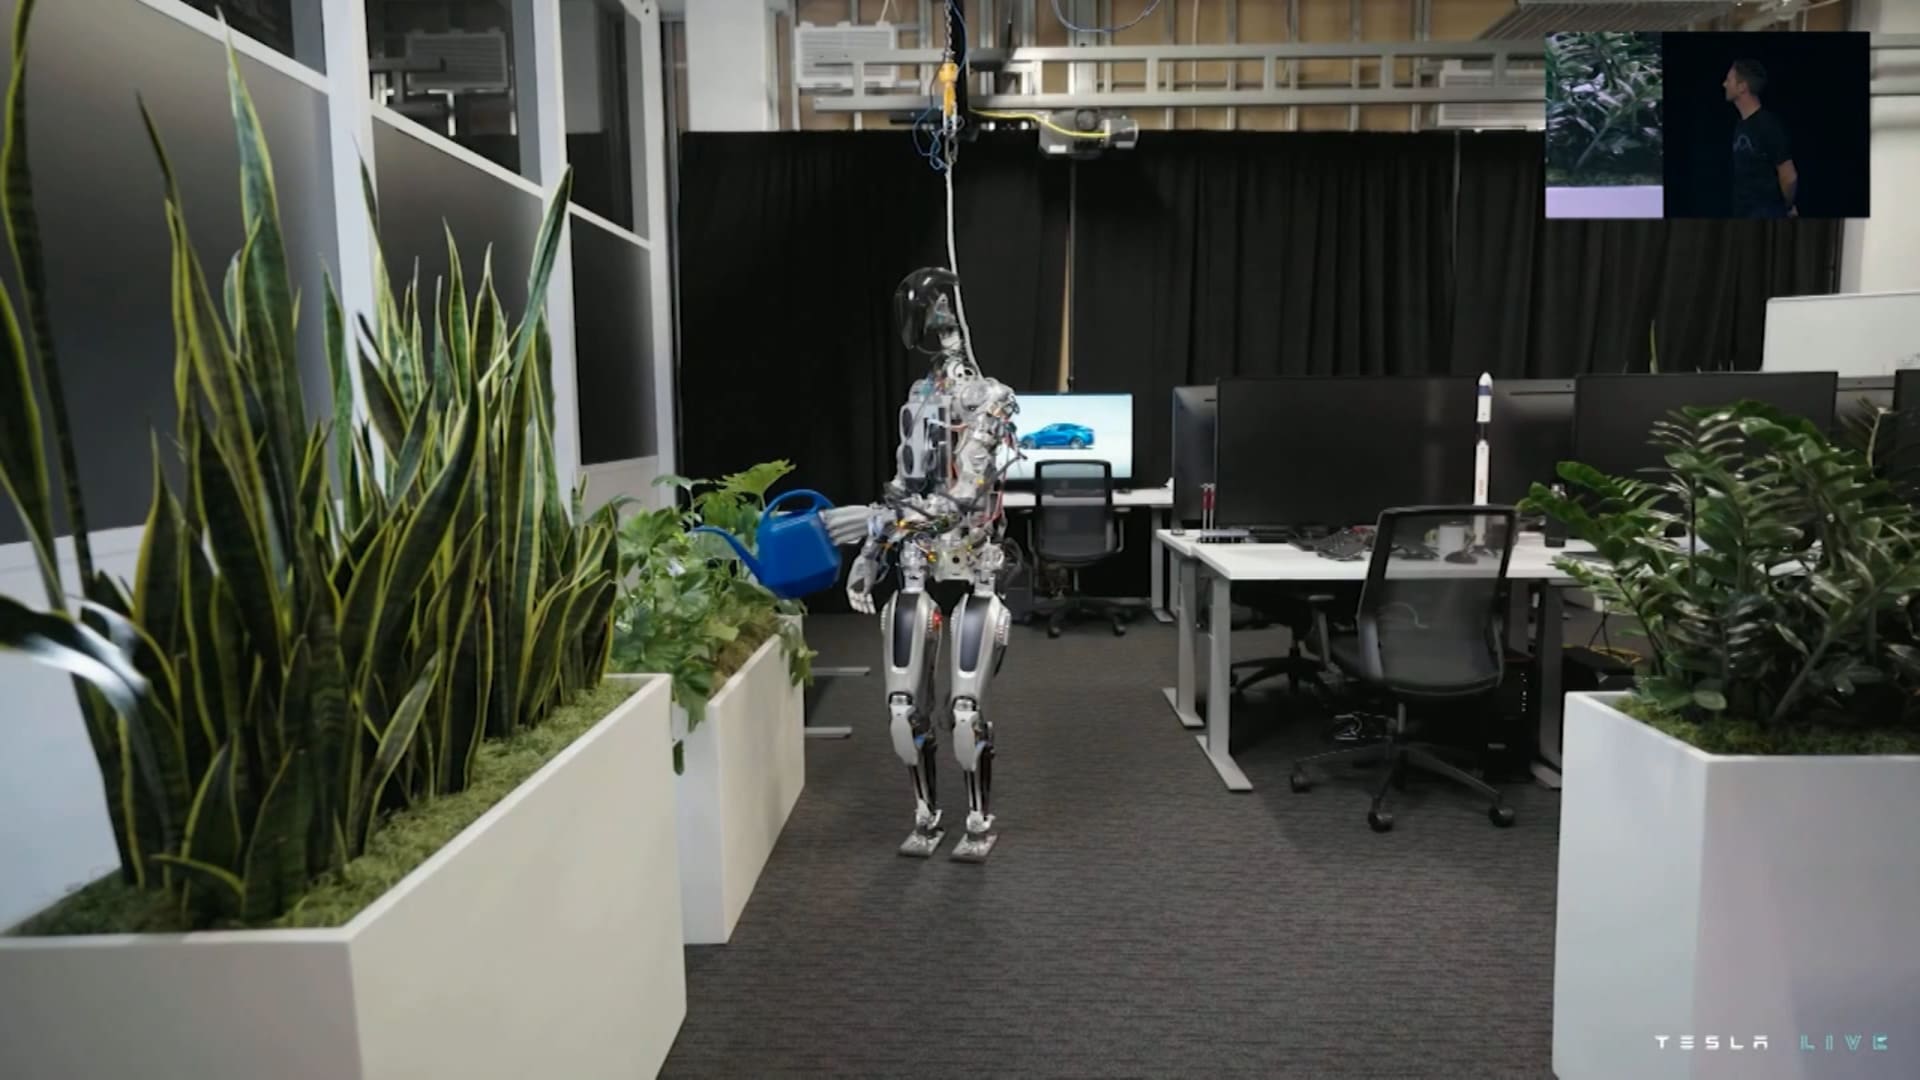 شاهد.. تسلا تطلق الروبوت "أوبتيموس" الذي يمكنه الرقص وسقي النباتات